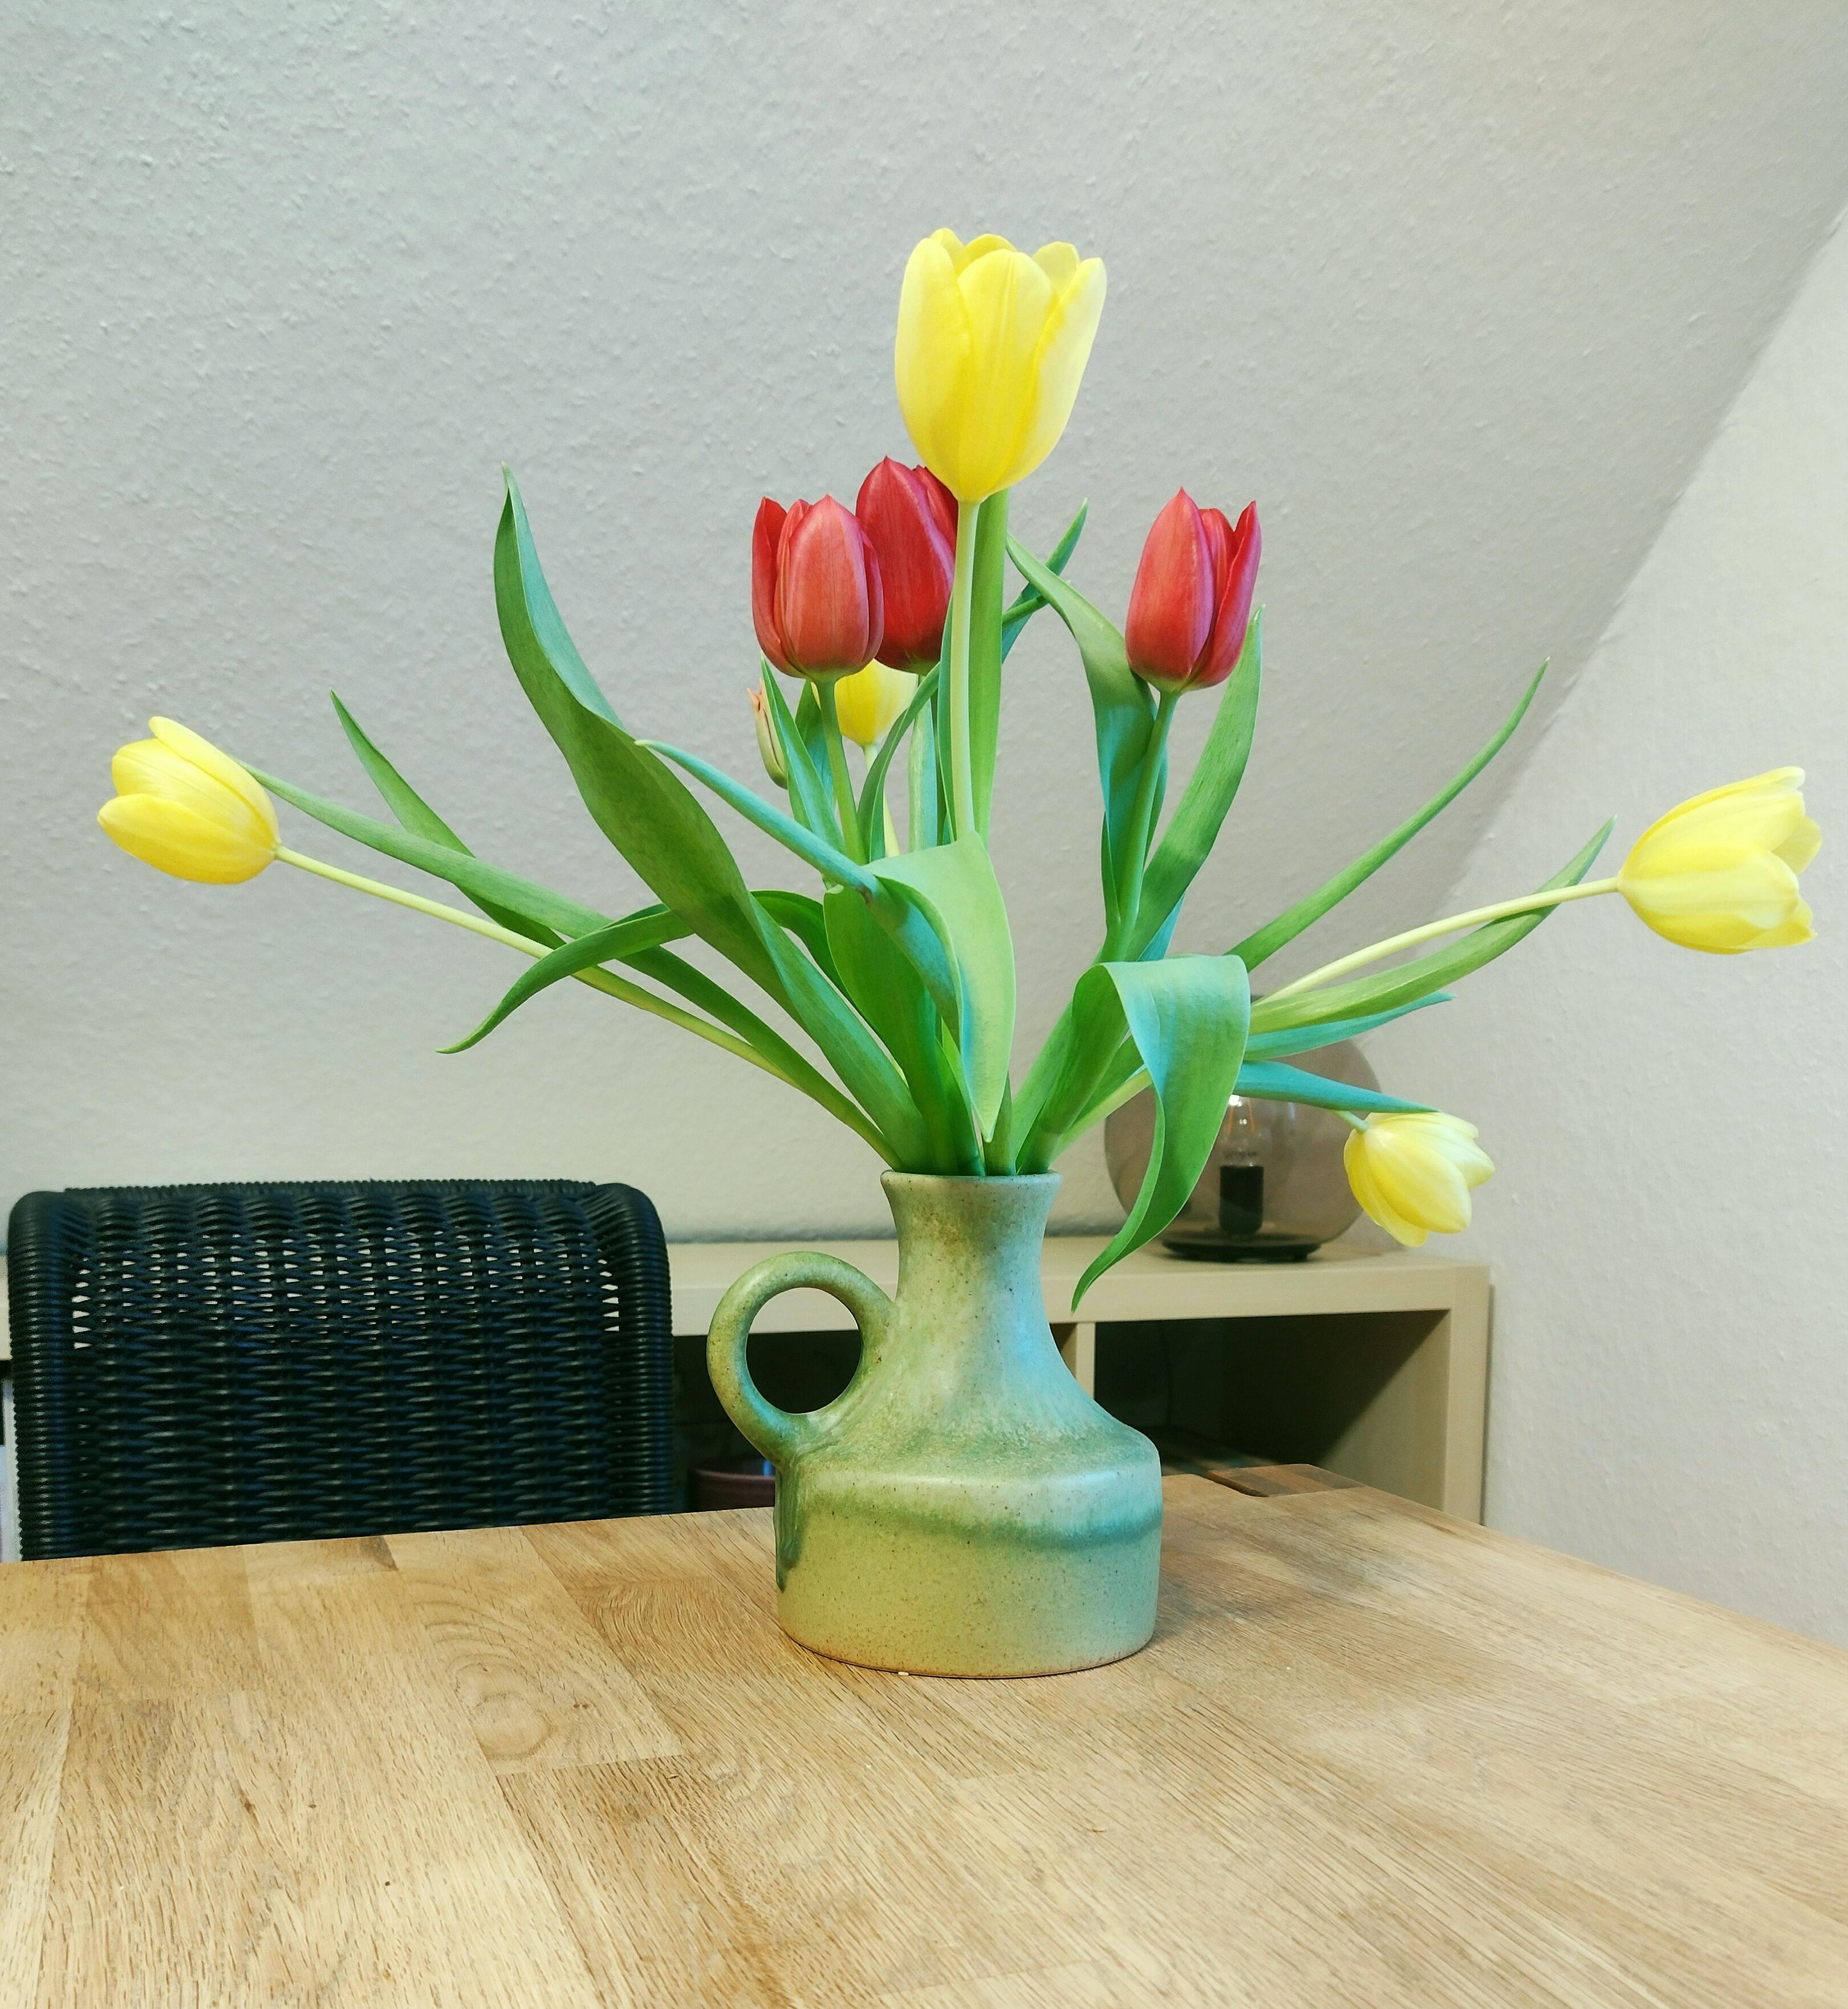 💛💚❤️
#keramikvase #retrovase #tulpen #frischeblumen #essecke #details #dachschräge #tulpenliebe